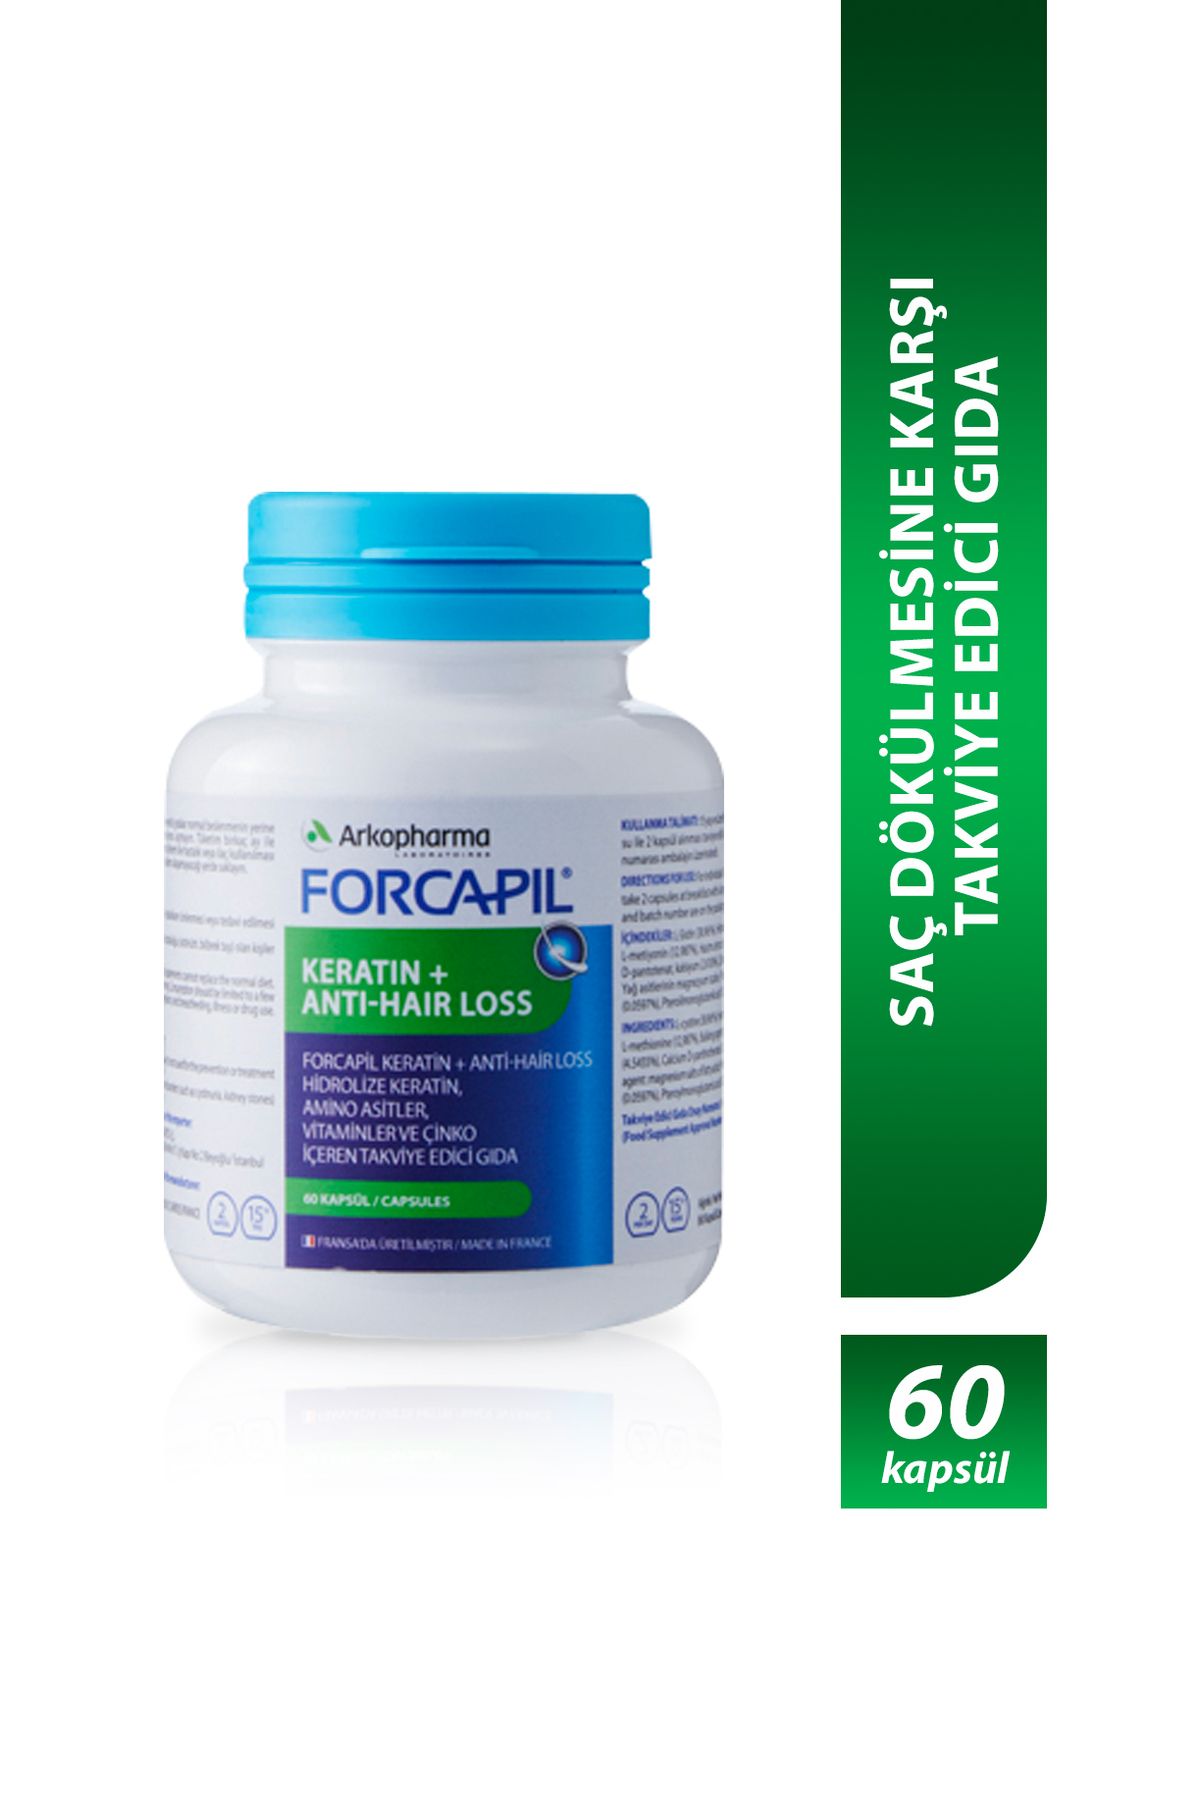 Arkopharma Forcapil® Keratin + Anti-hair Loss – Saç Dökülmesine Karşı Takviye Edici Gıda - 60 Kapsül